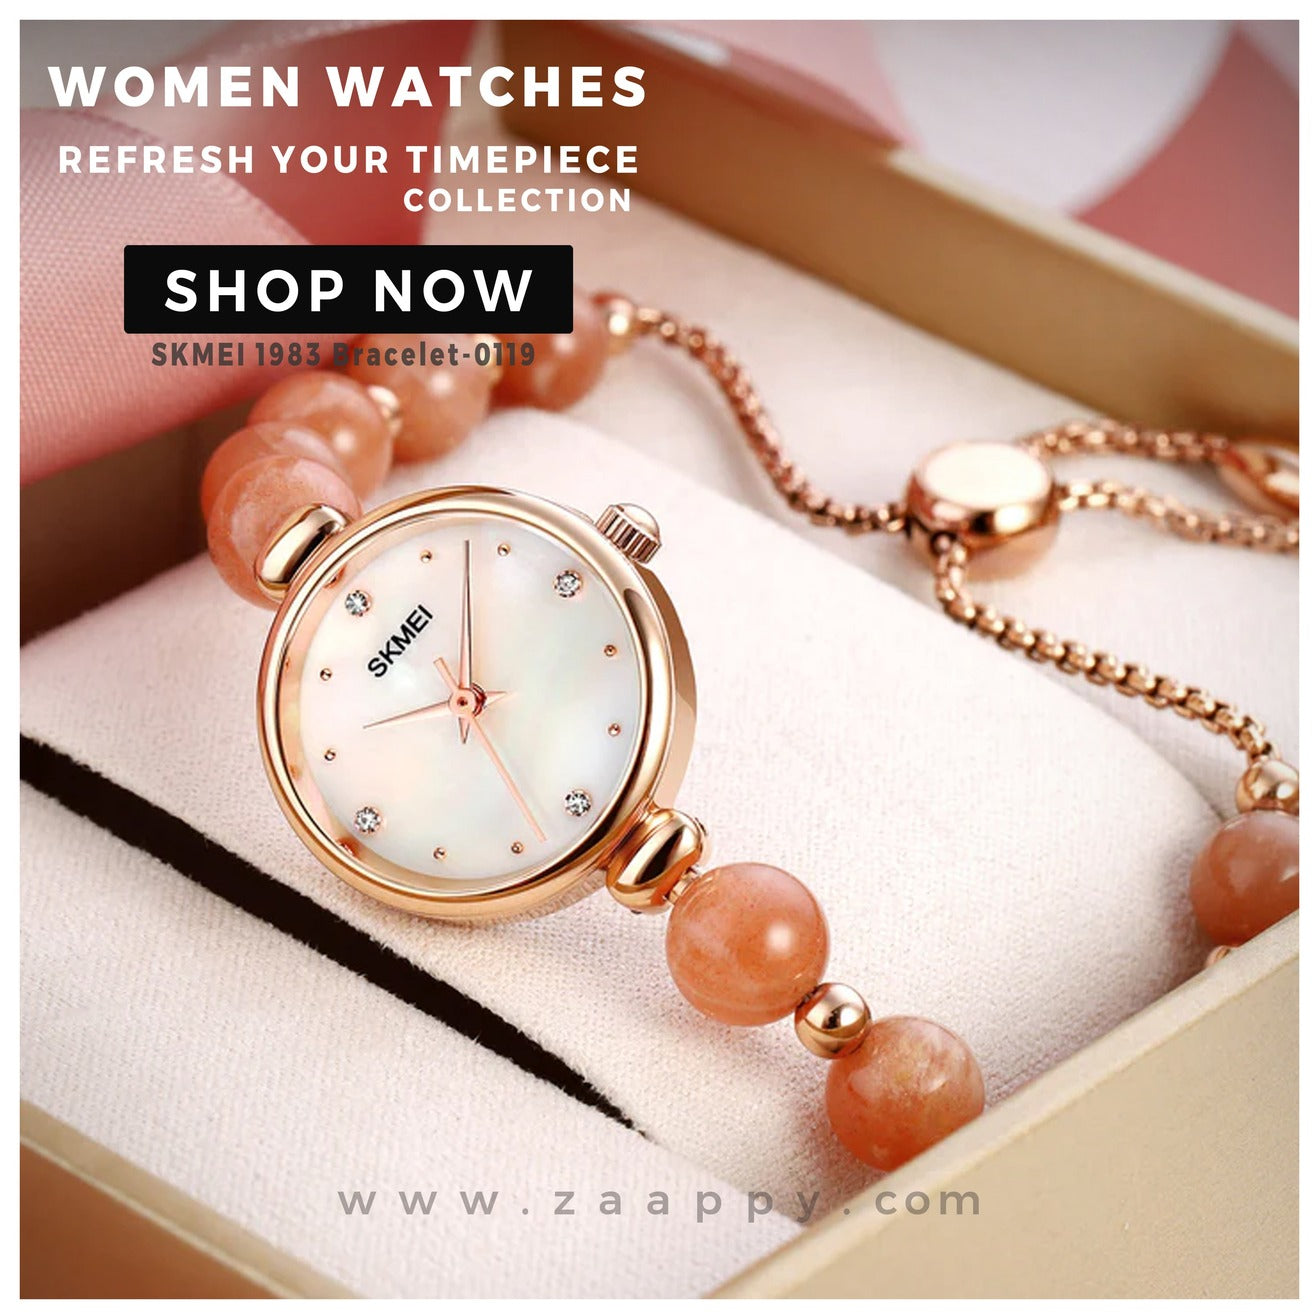 SKMEI 1981 Romantic Style Bracelet Quarts Women's Fashion Watch zaappy.com